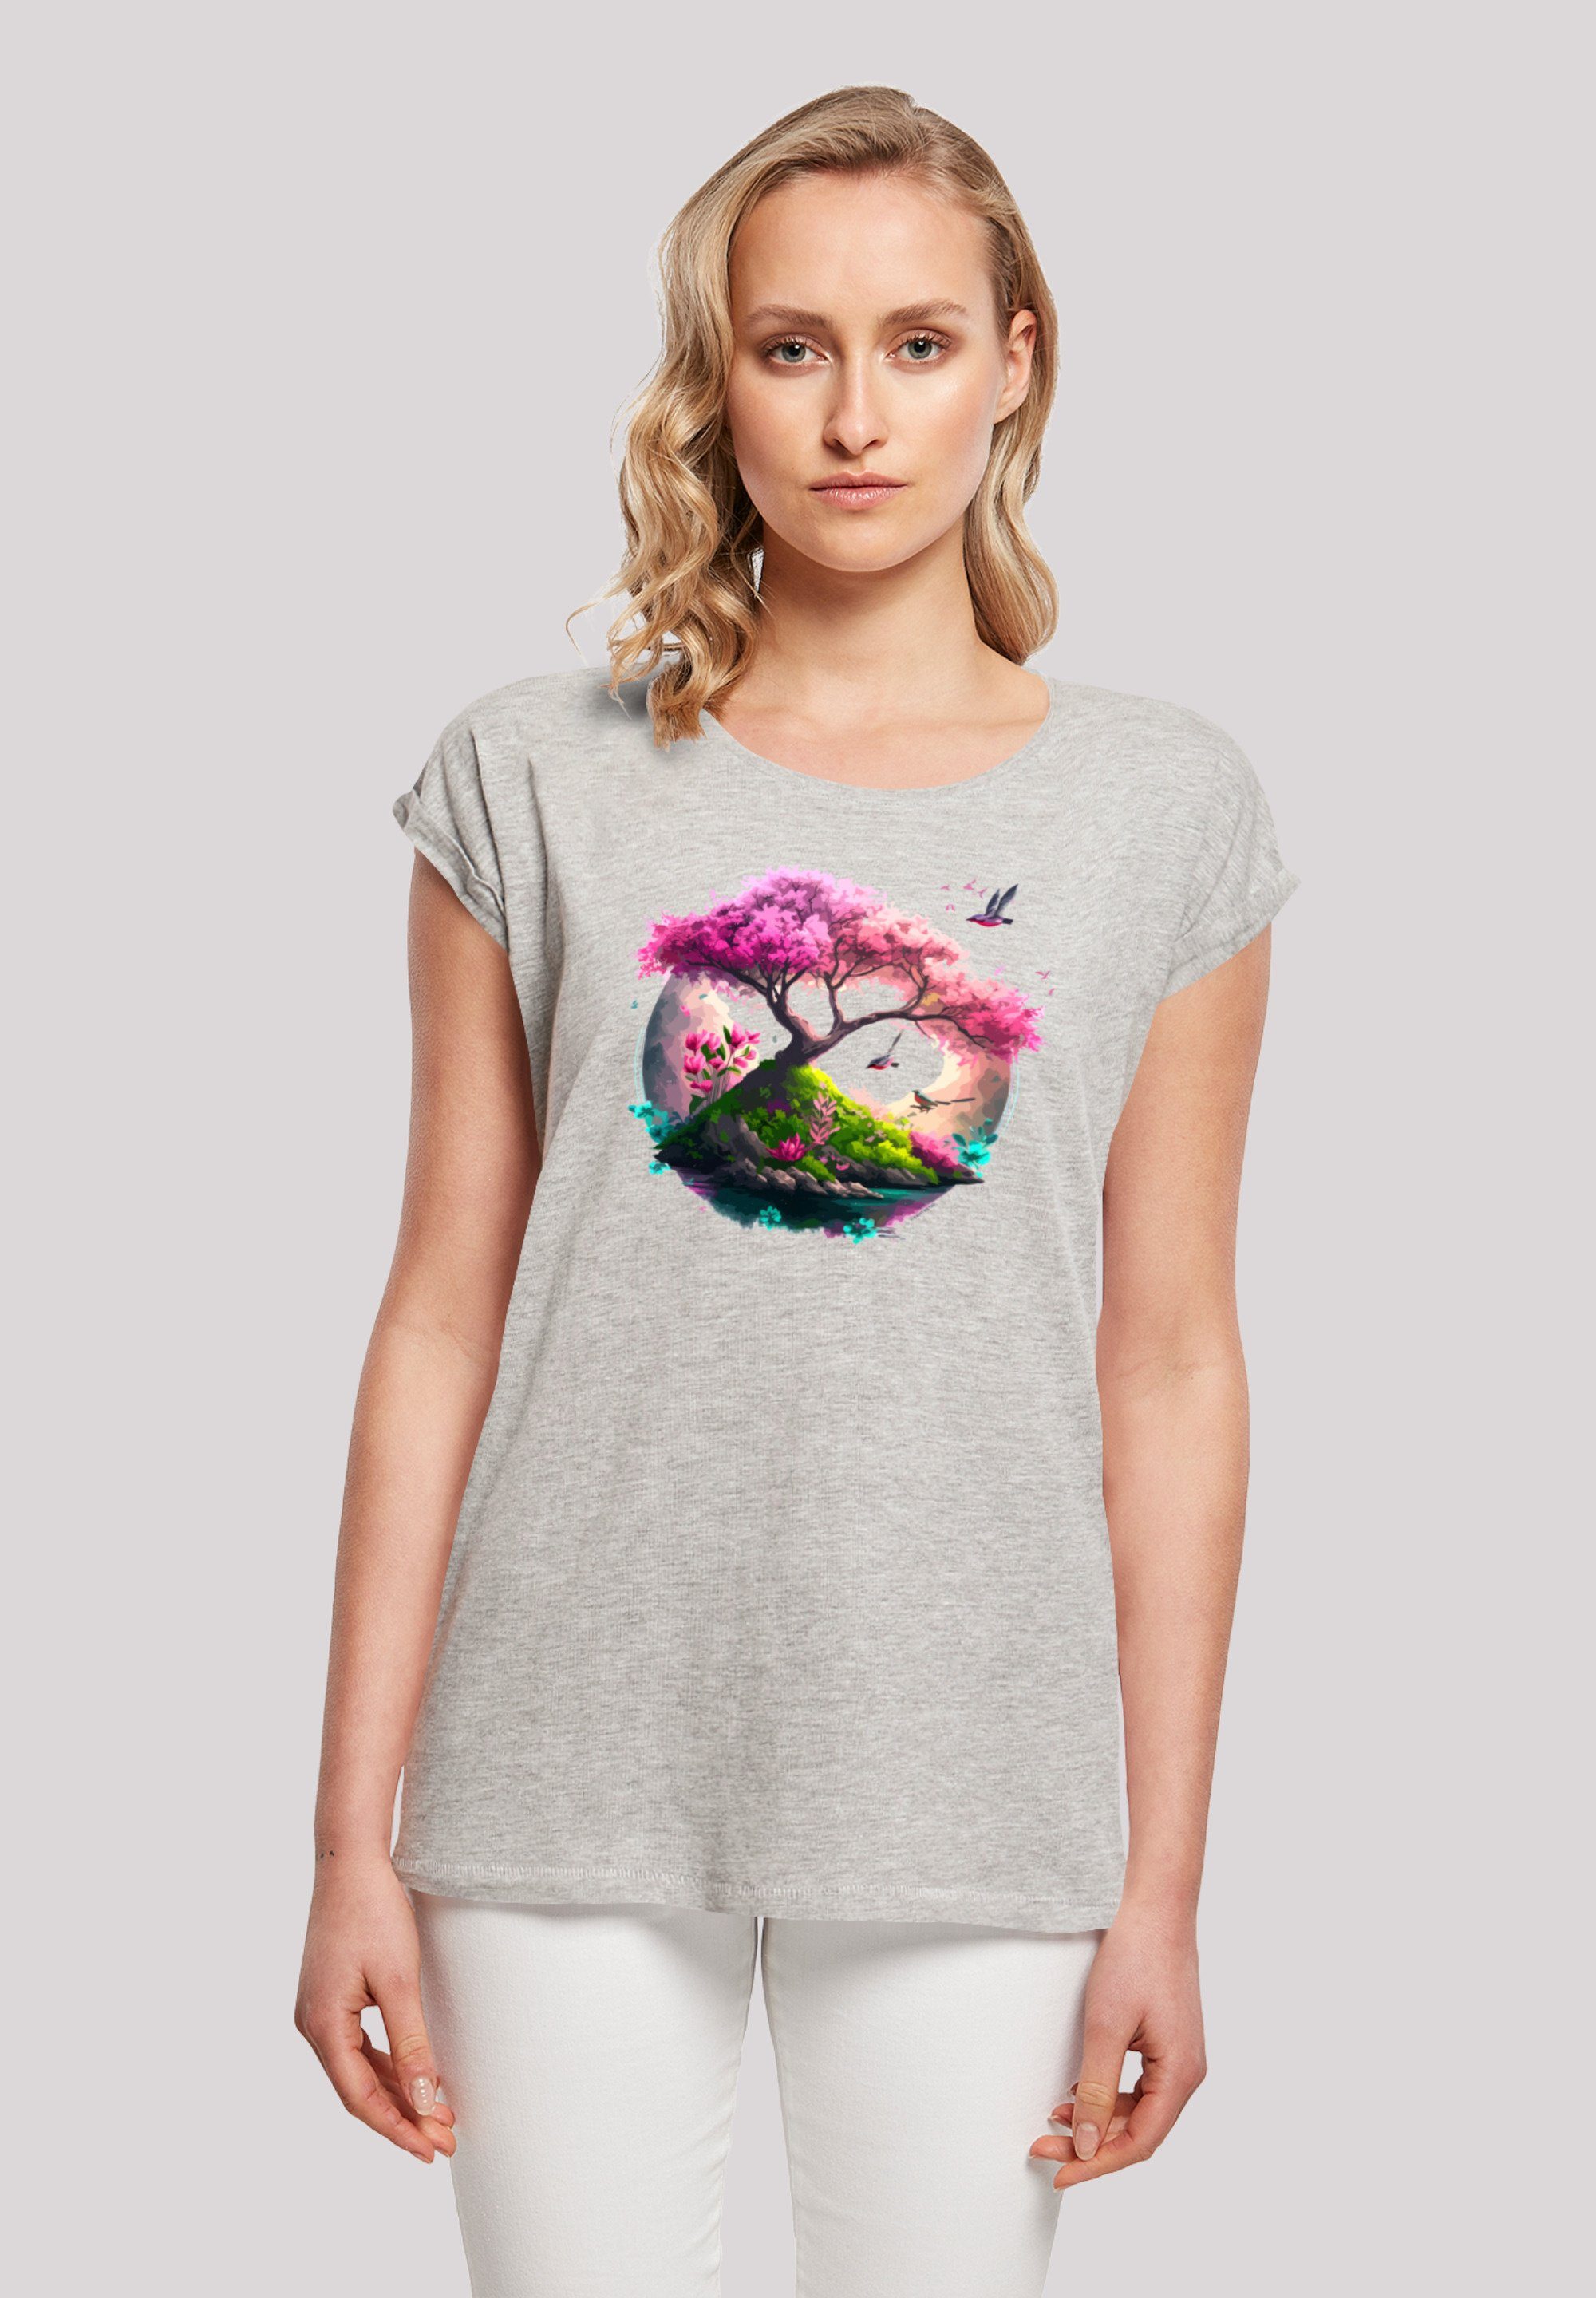 ist Kirschblüten groß Model F4NT4STIC T-Shirt Das trägt 170 und Baum Print, M Größe cm